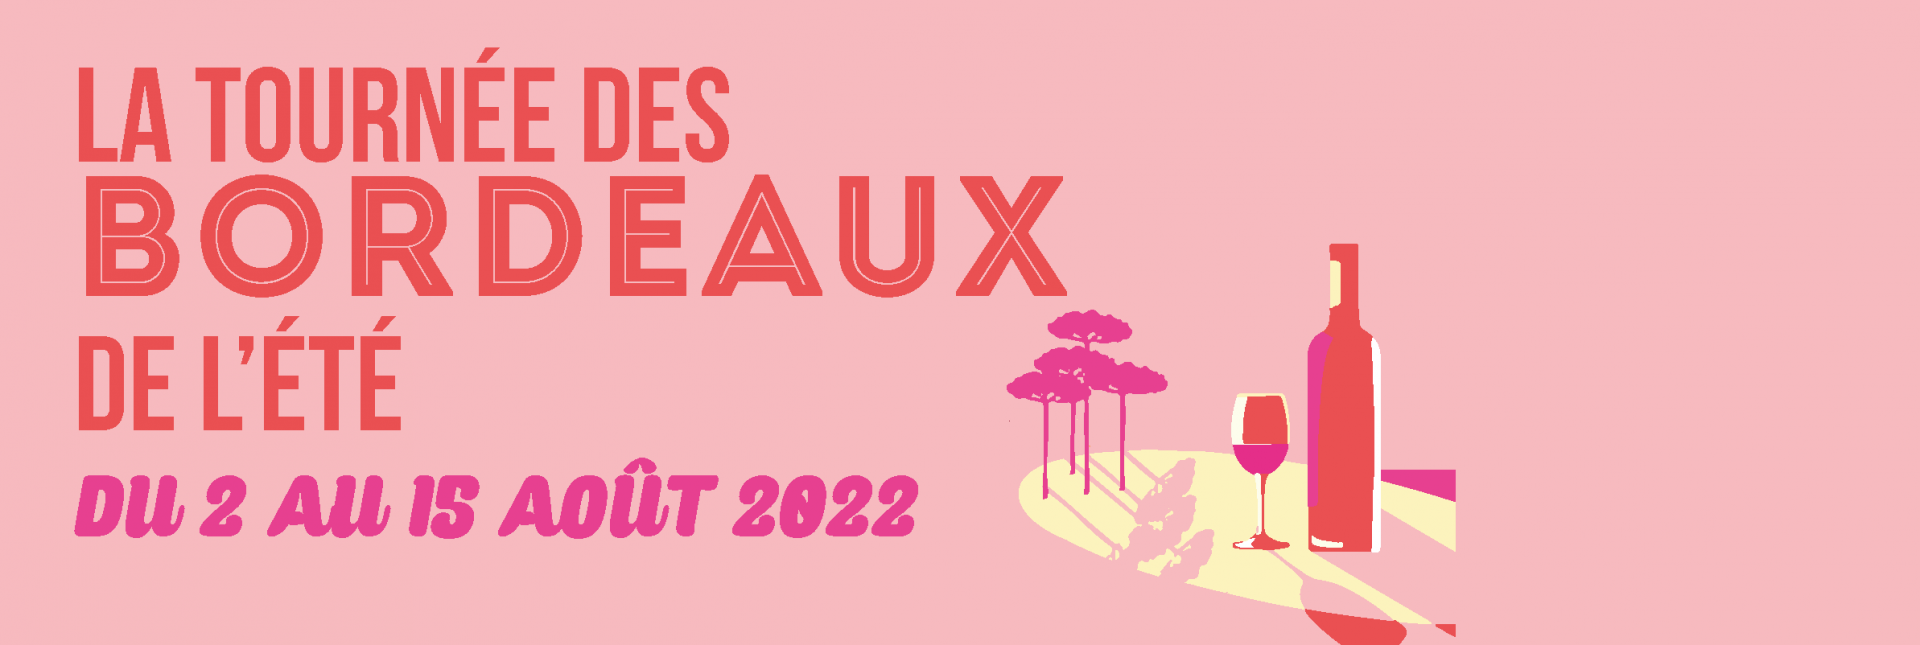 La Tournée des Bordeaux de l'Eté 2022